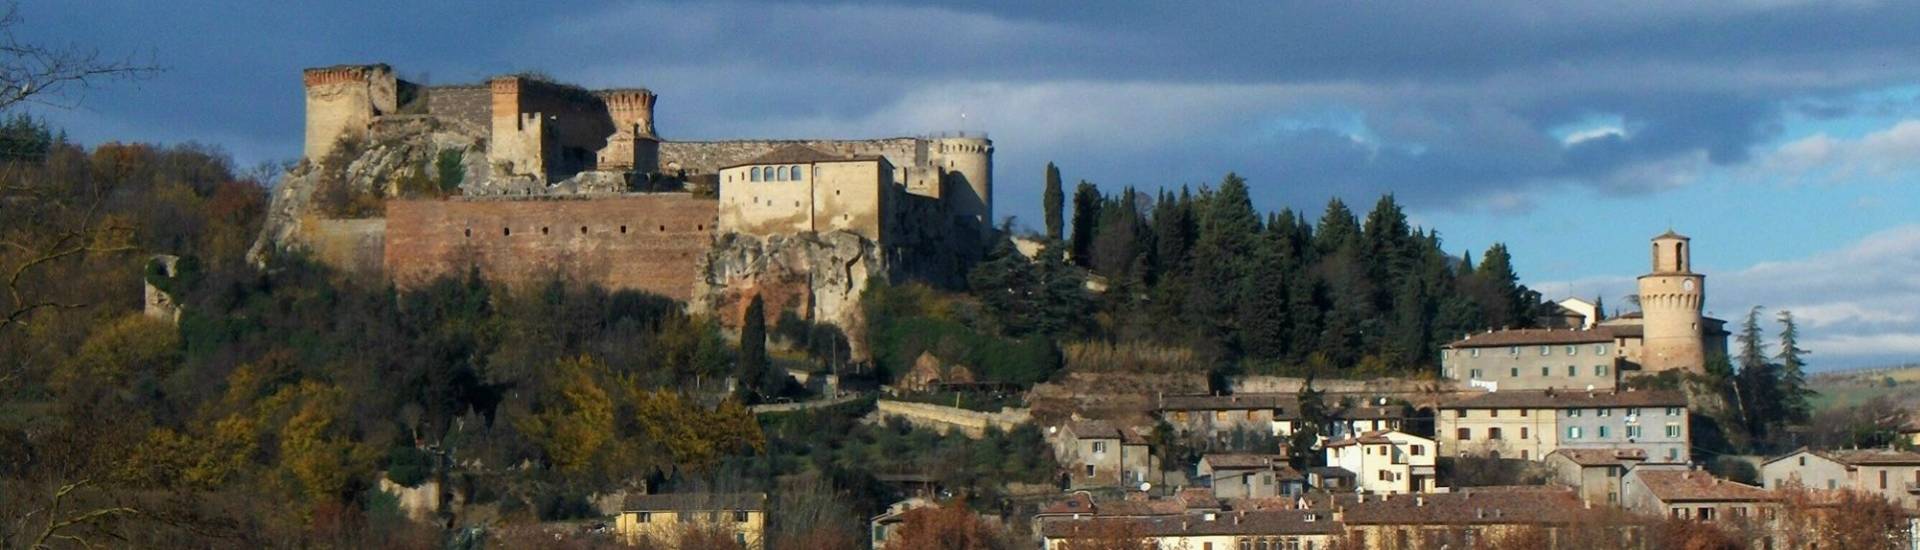 Fortezza Medievale di Castrocaro - Rocca di Castrocaro foto di: |Elio Caruso| - autore